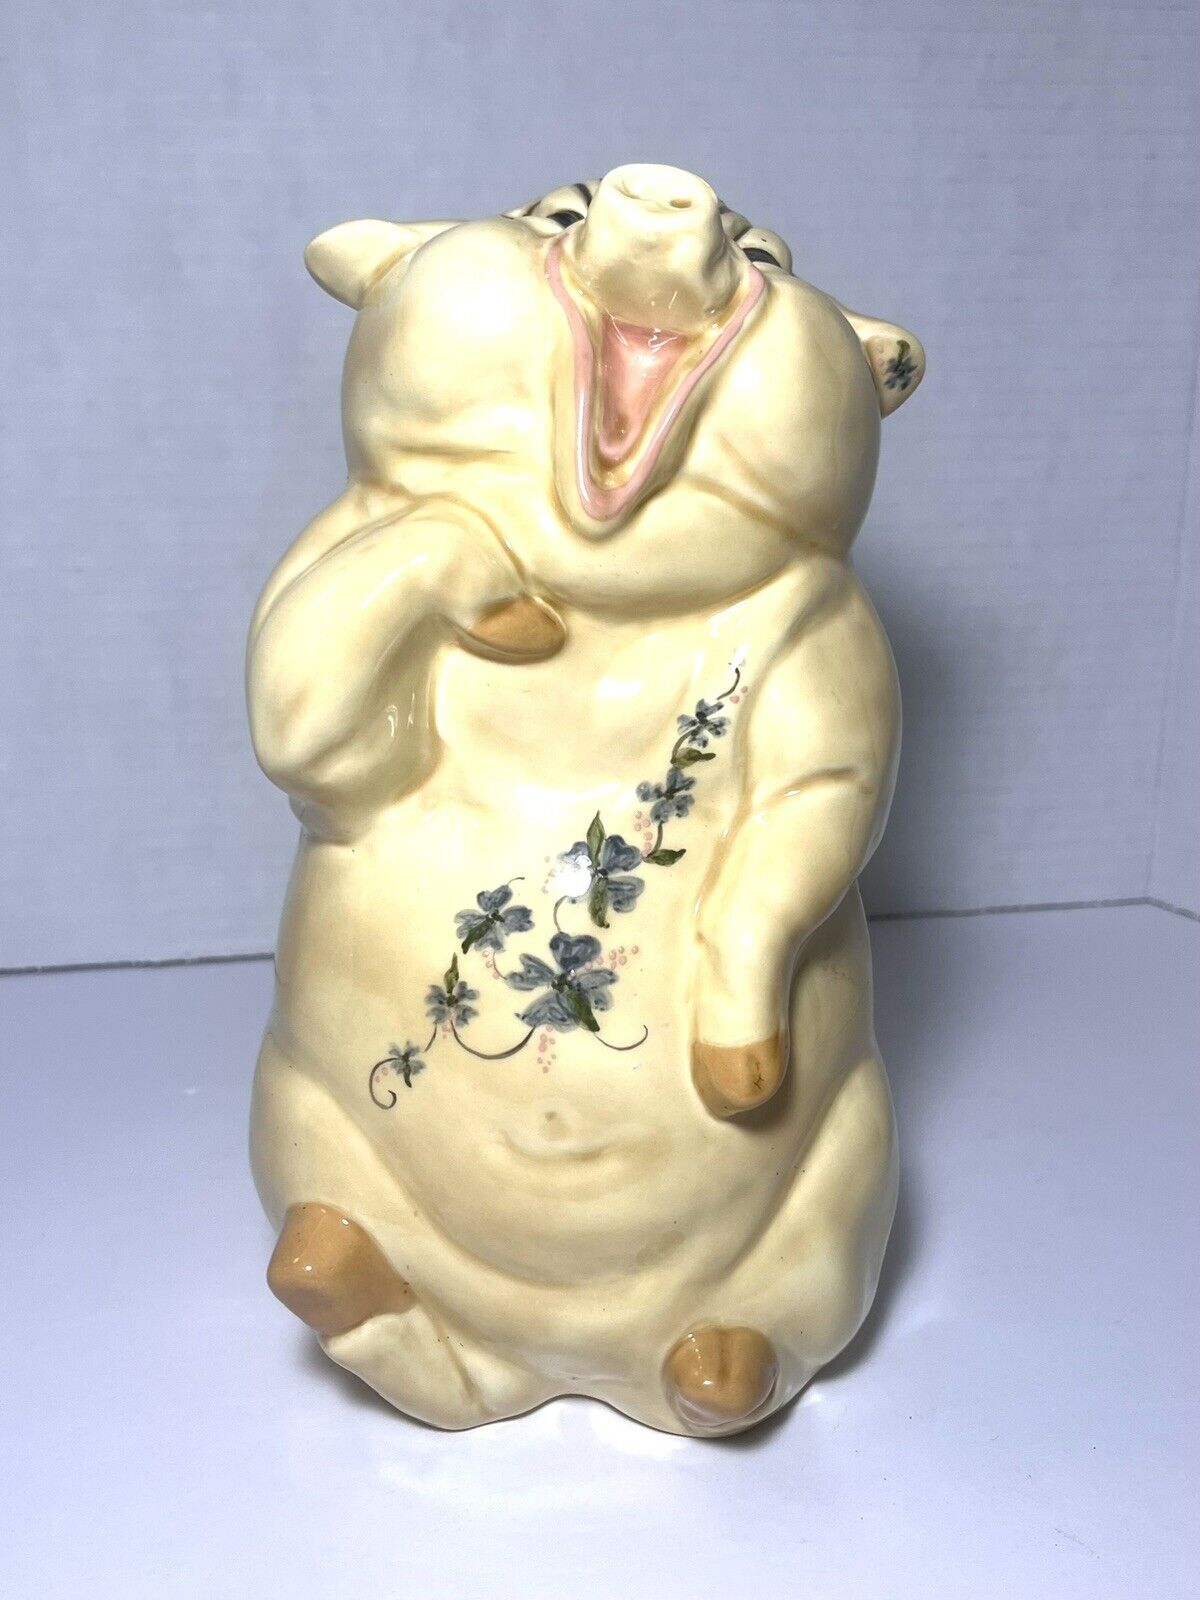 Antique German Singing Pig Figurine, Vintage 9 Inch Laughing Hand Painted Swine